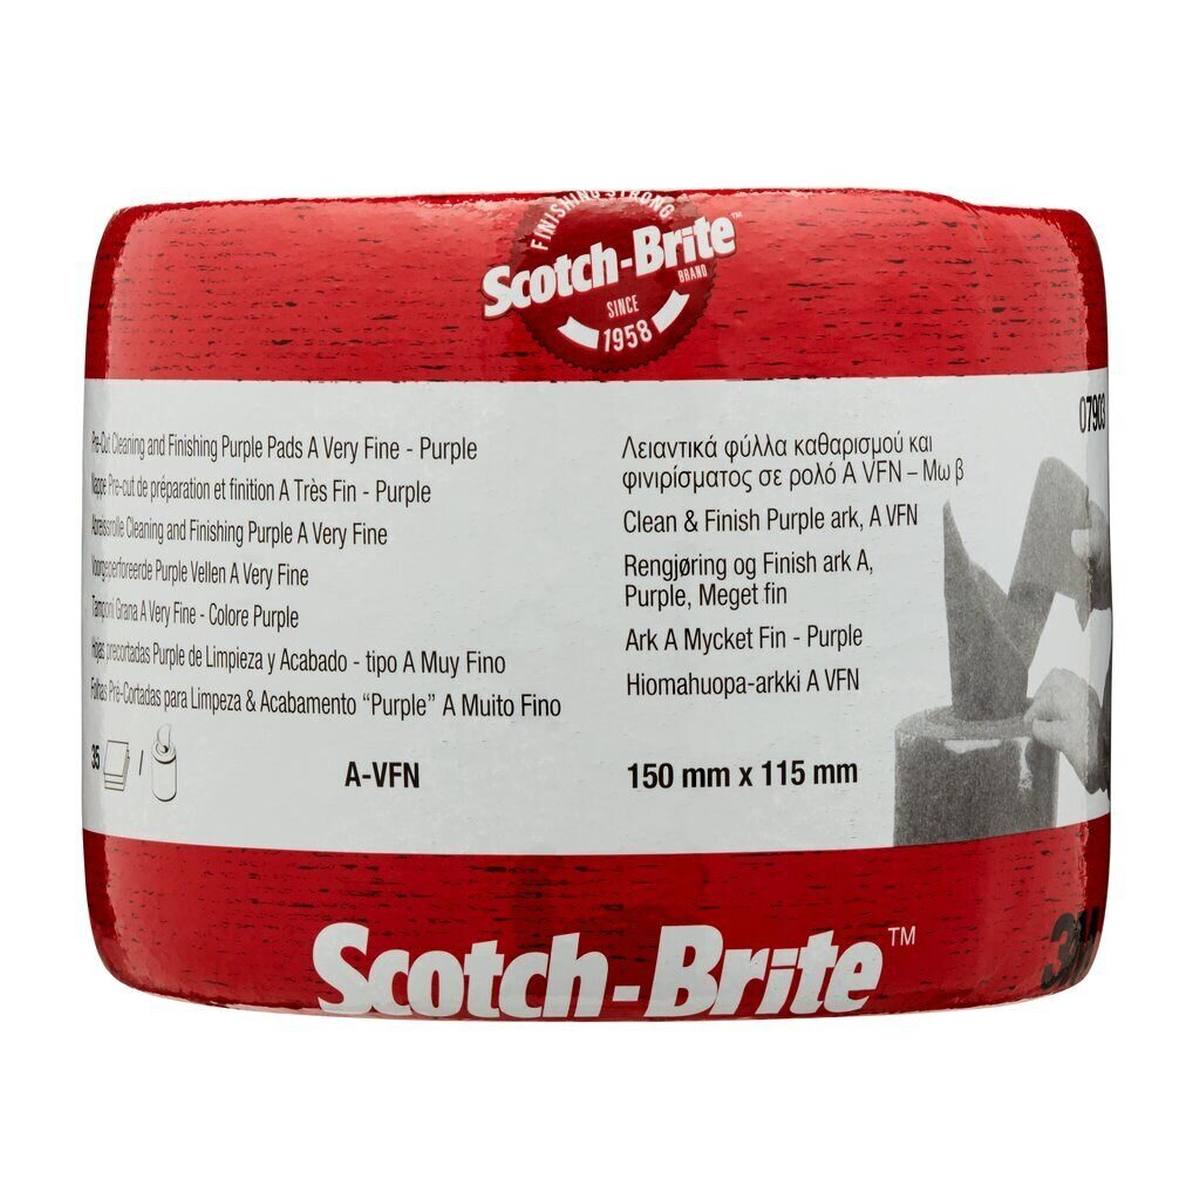 3M Scotch-Brite vliesrol CF-SR, paars, 150 mm x 115 mm, A, zeer fijn, 35-voudig geperforeerd #07903